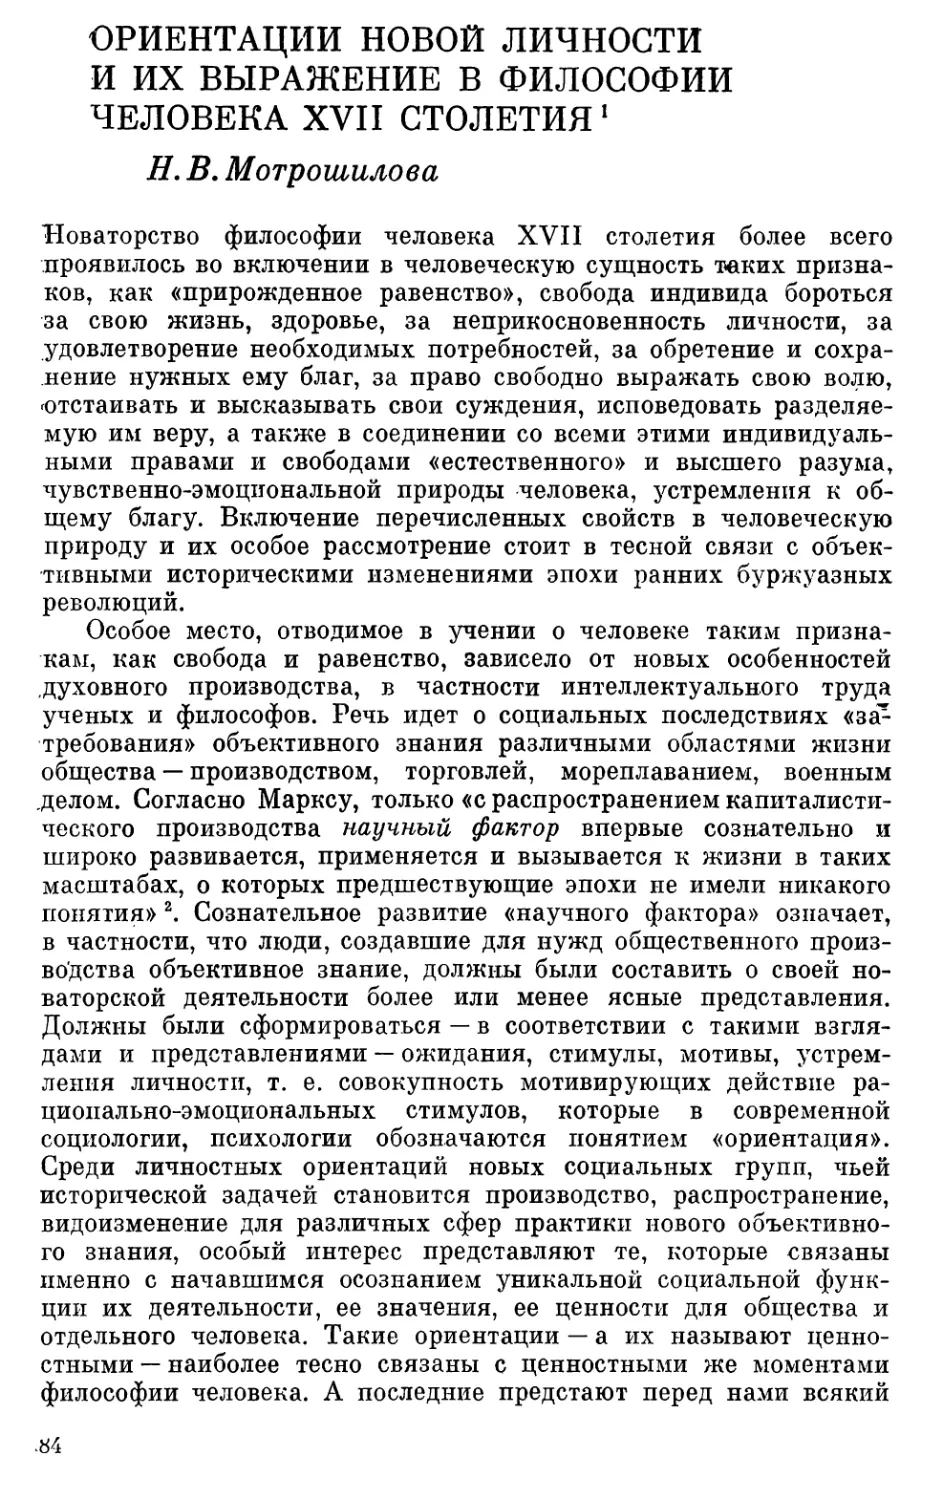 Мотрошилова Н.В. Ориентации новой личности и их выражение в философии человека XVII столетия